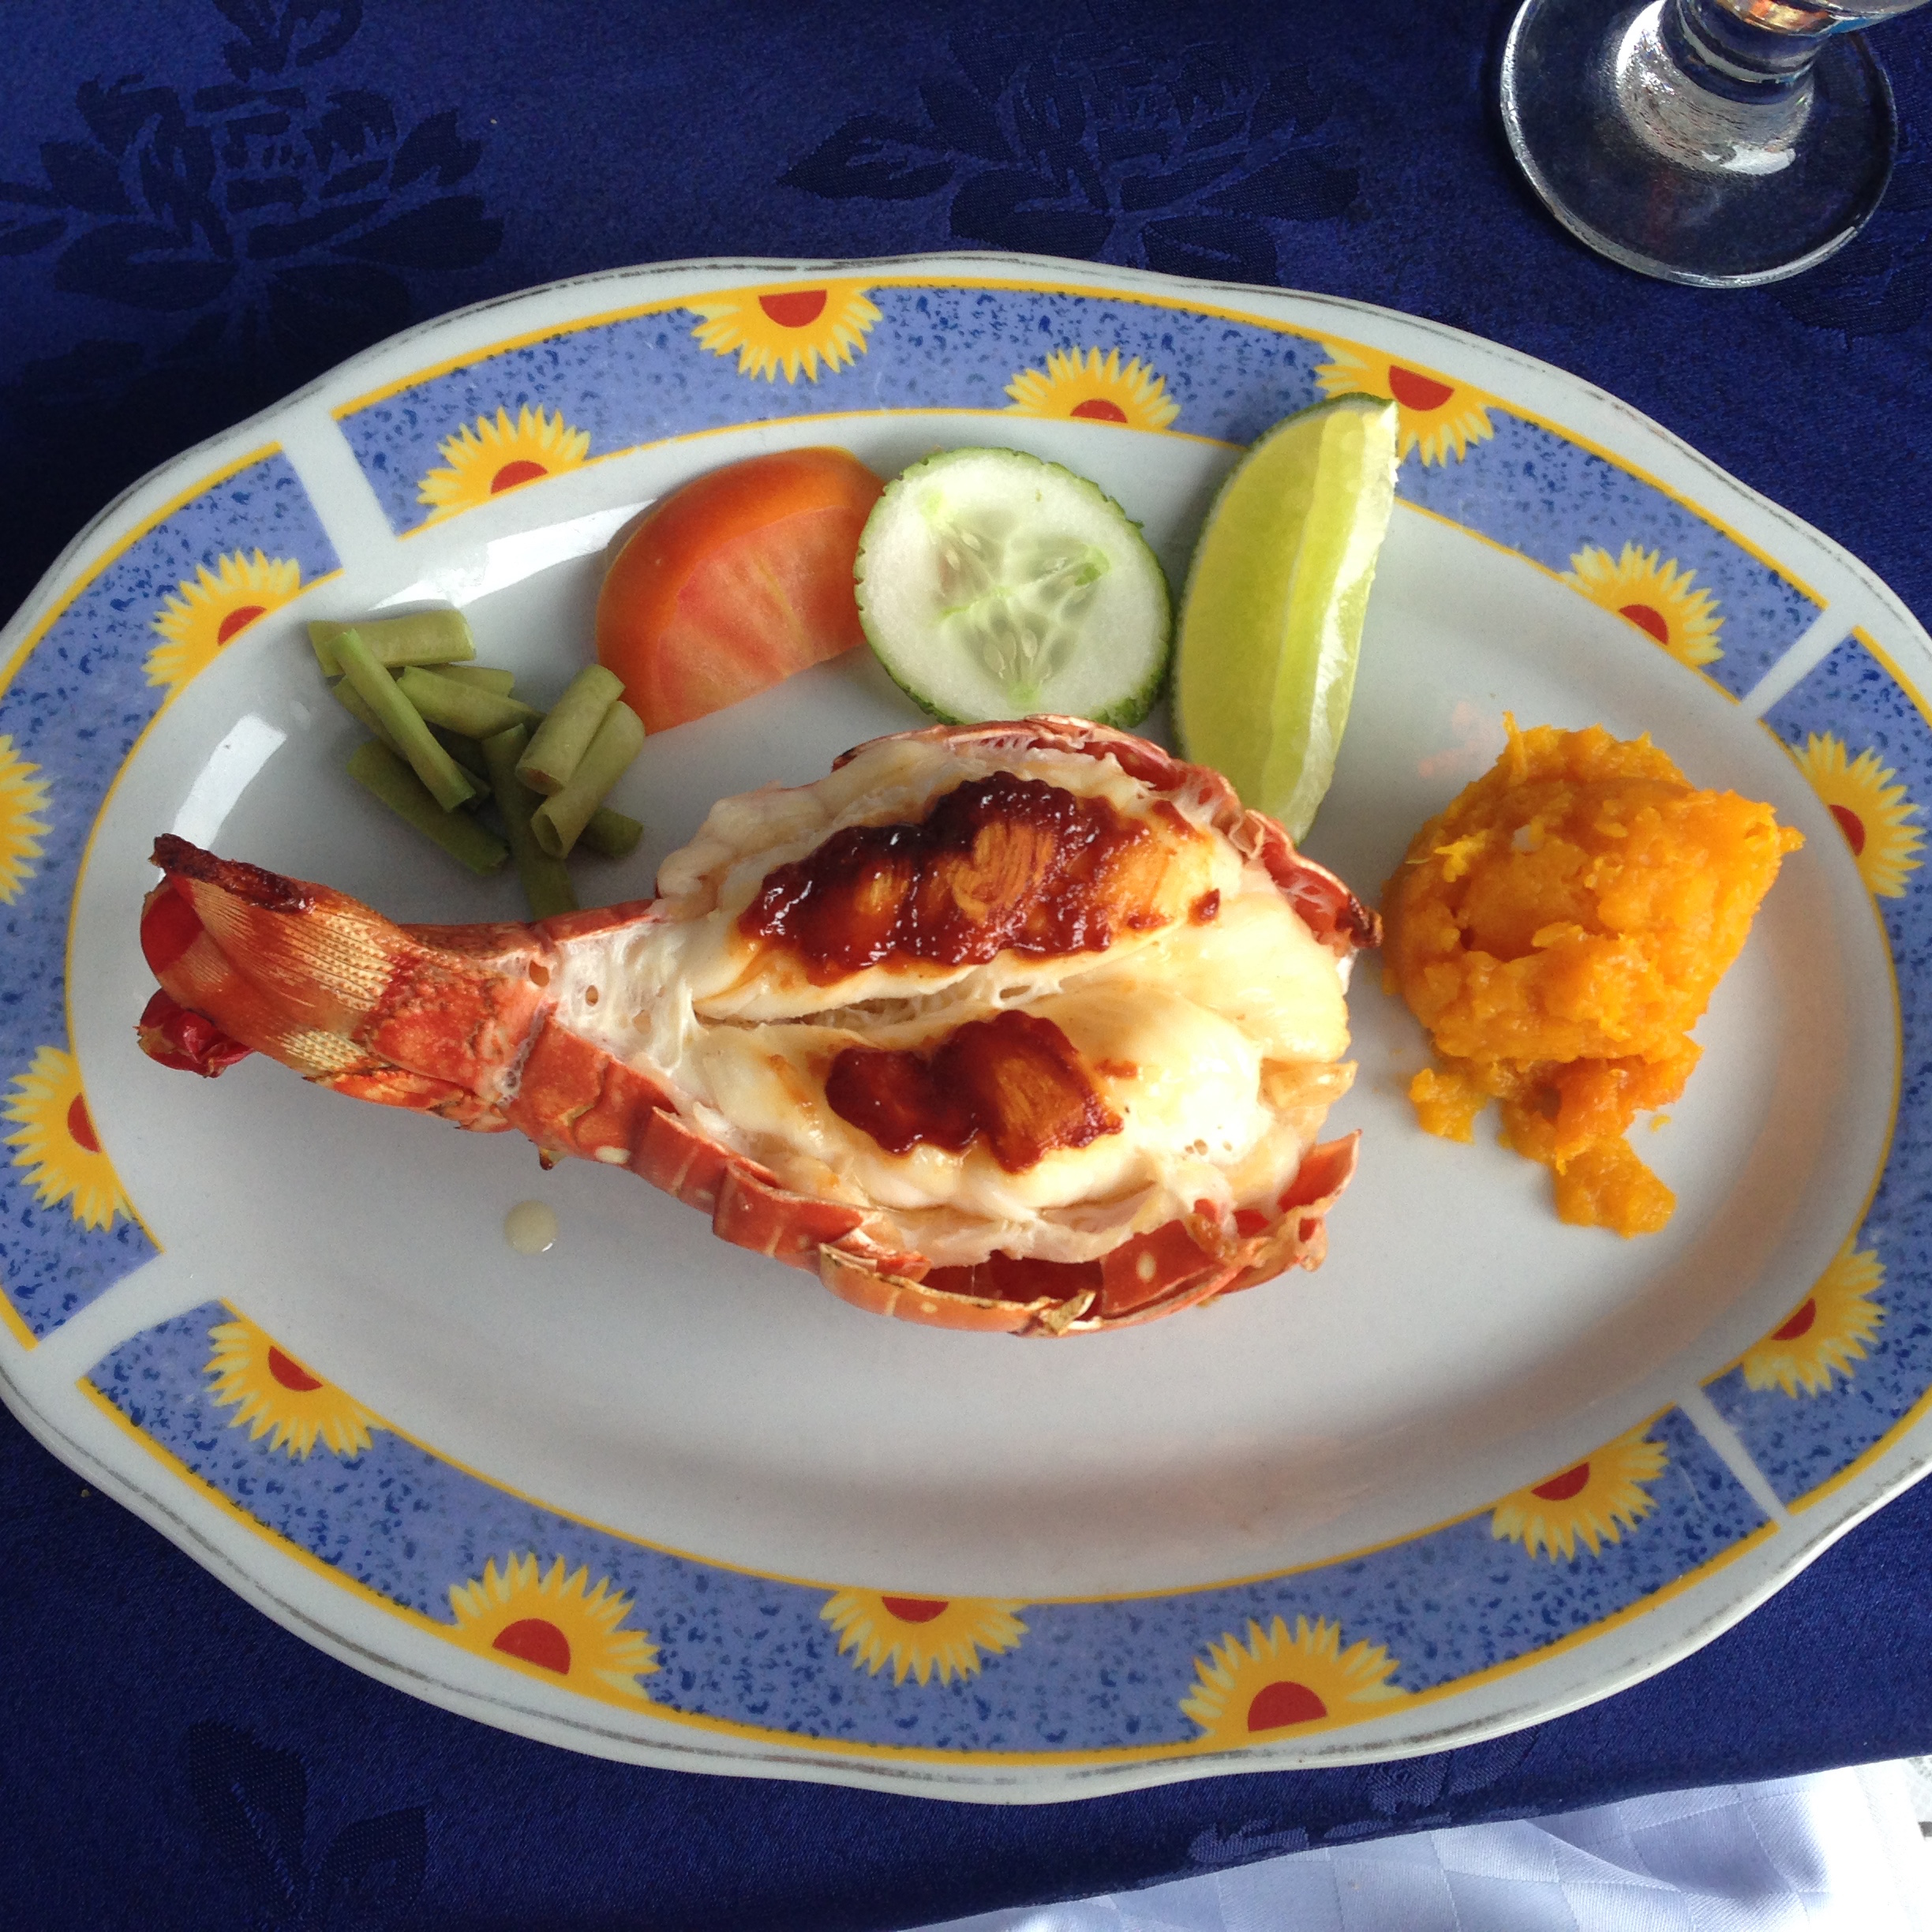 Grilled Lobster, salad and pumpkin at La Casona Del Arte